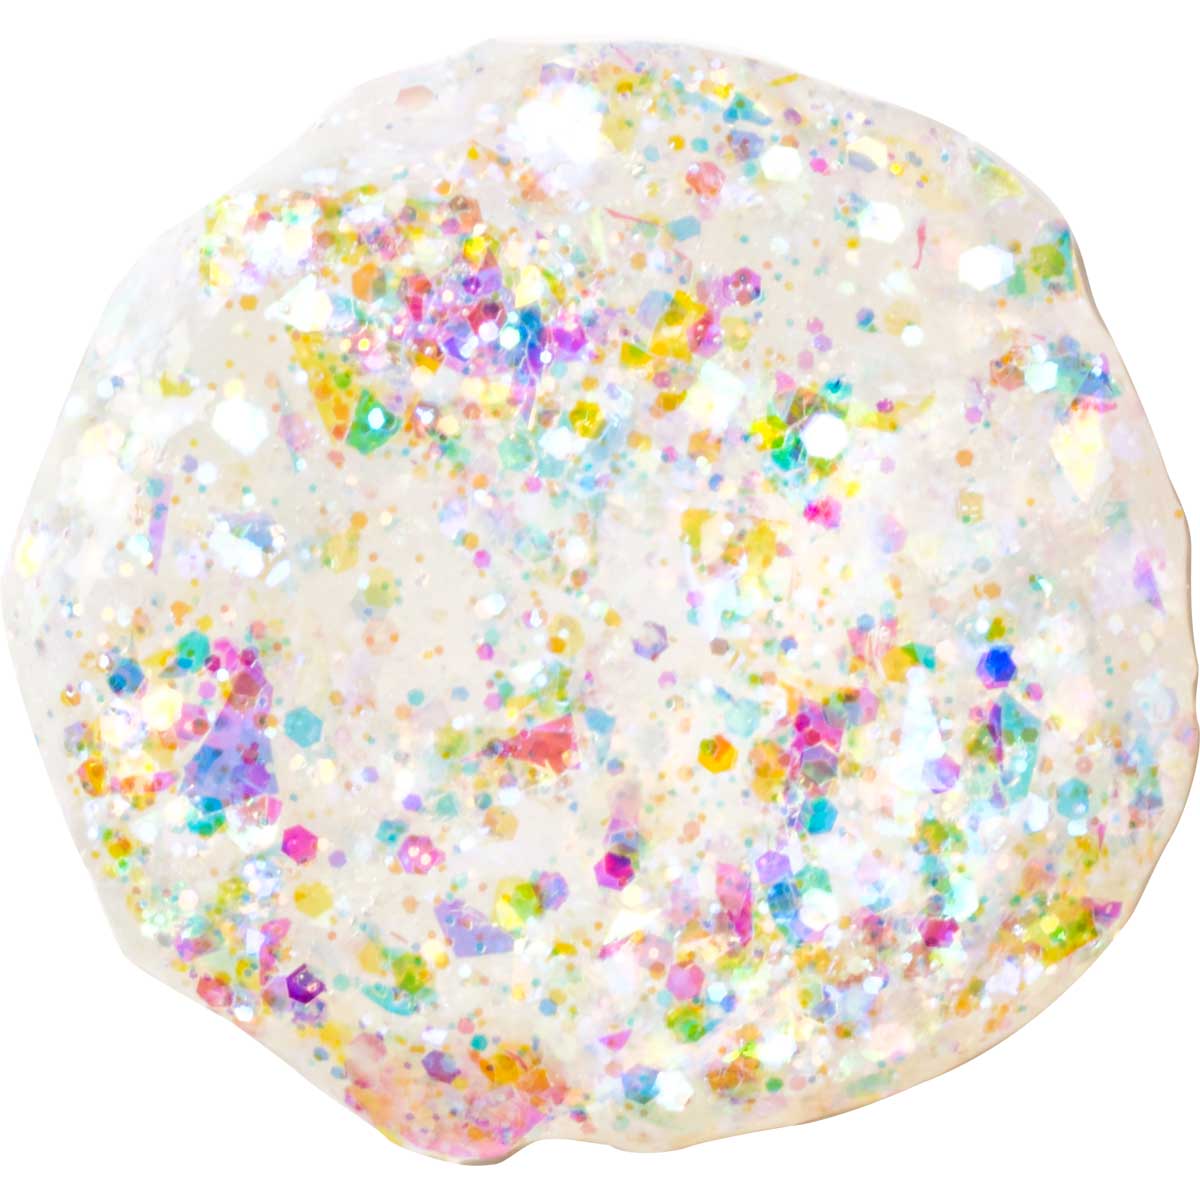 Delta Ceramcoat ® Glitter Explosion™ - Clear Hologram, 2 oz. - 03086